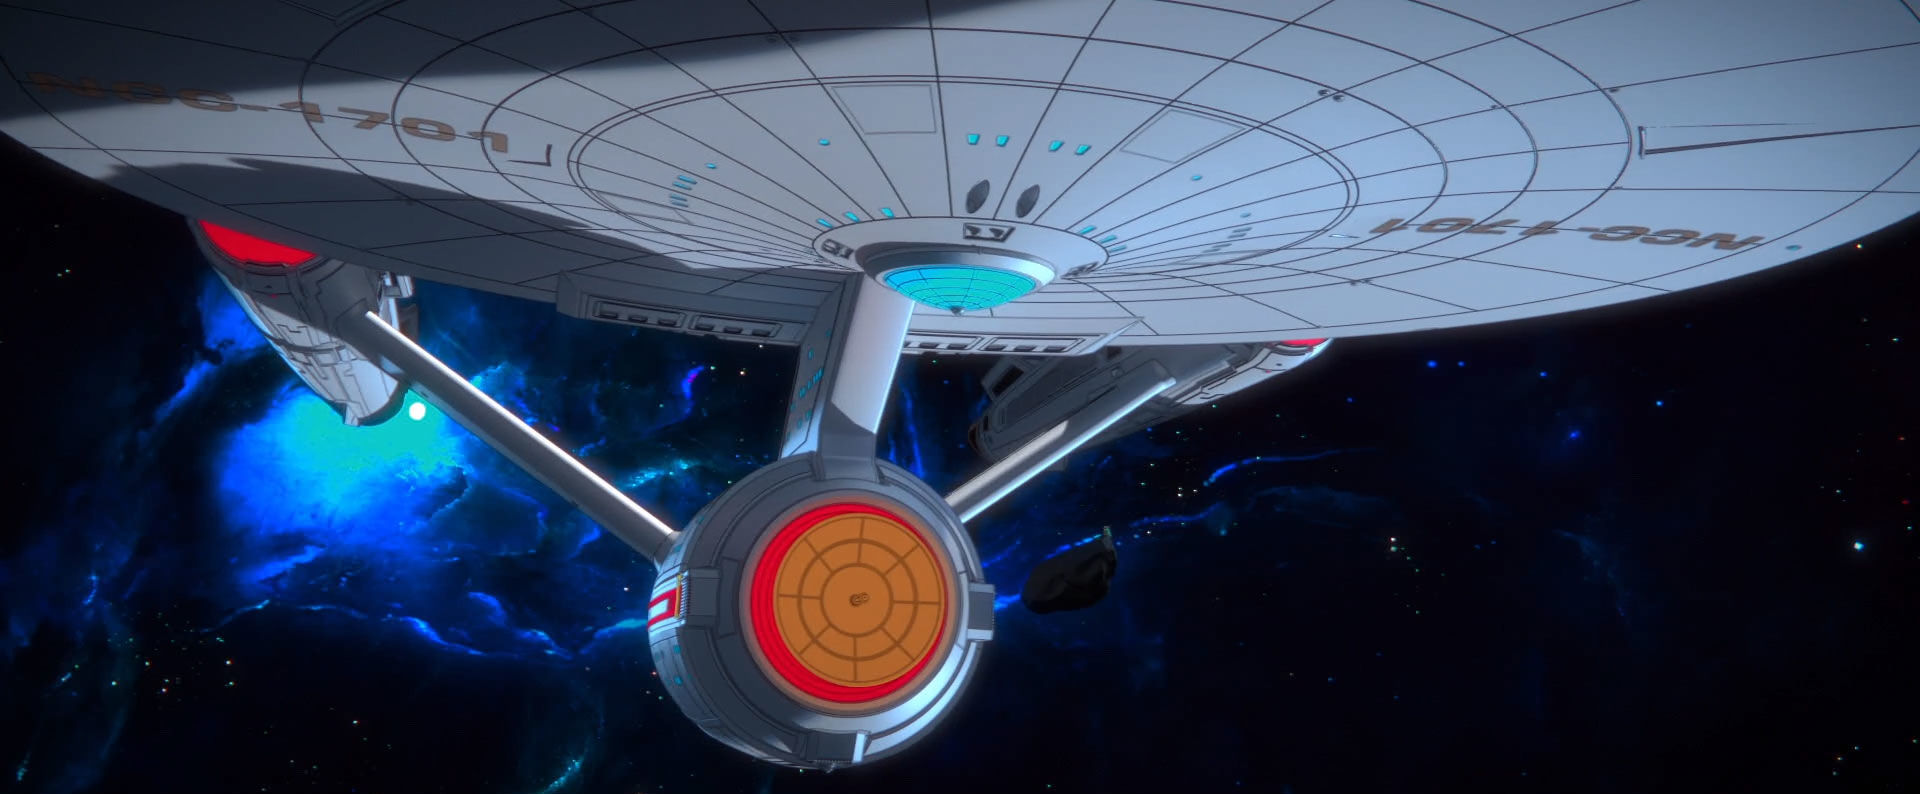 Enterprise animated short treks